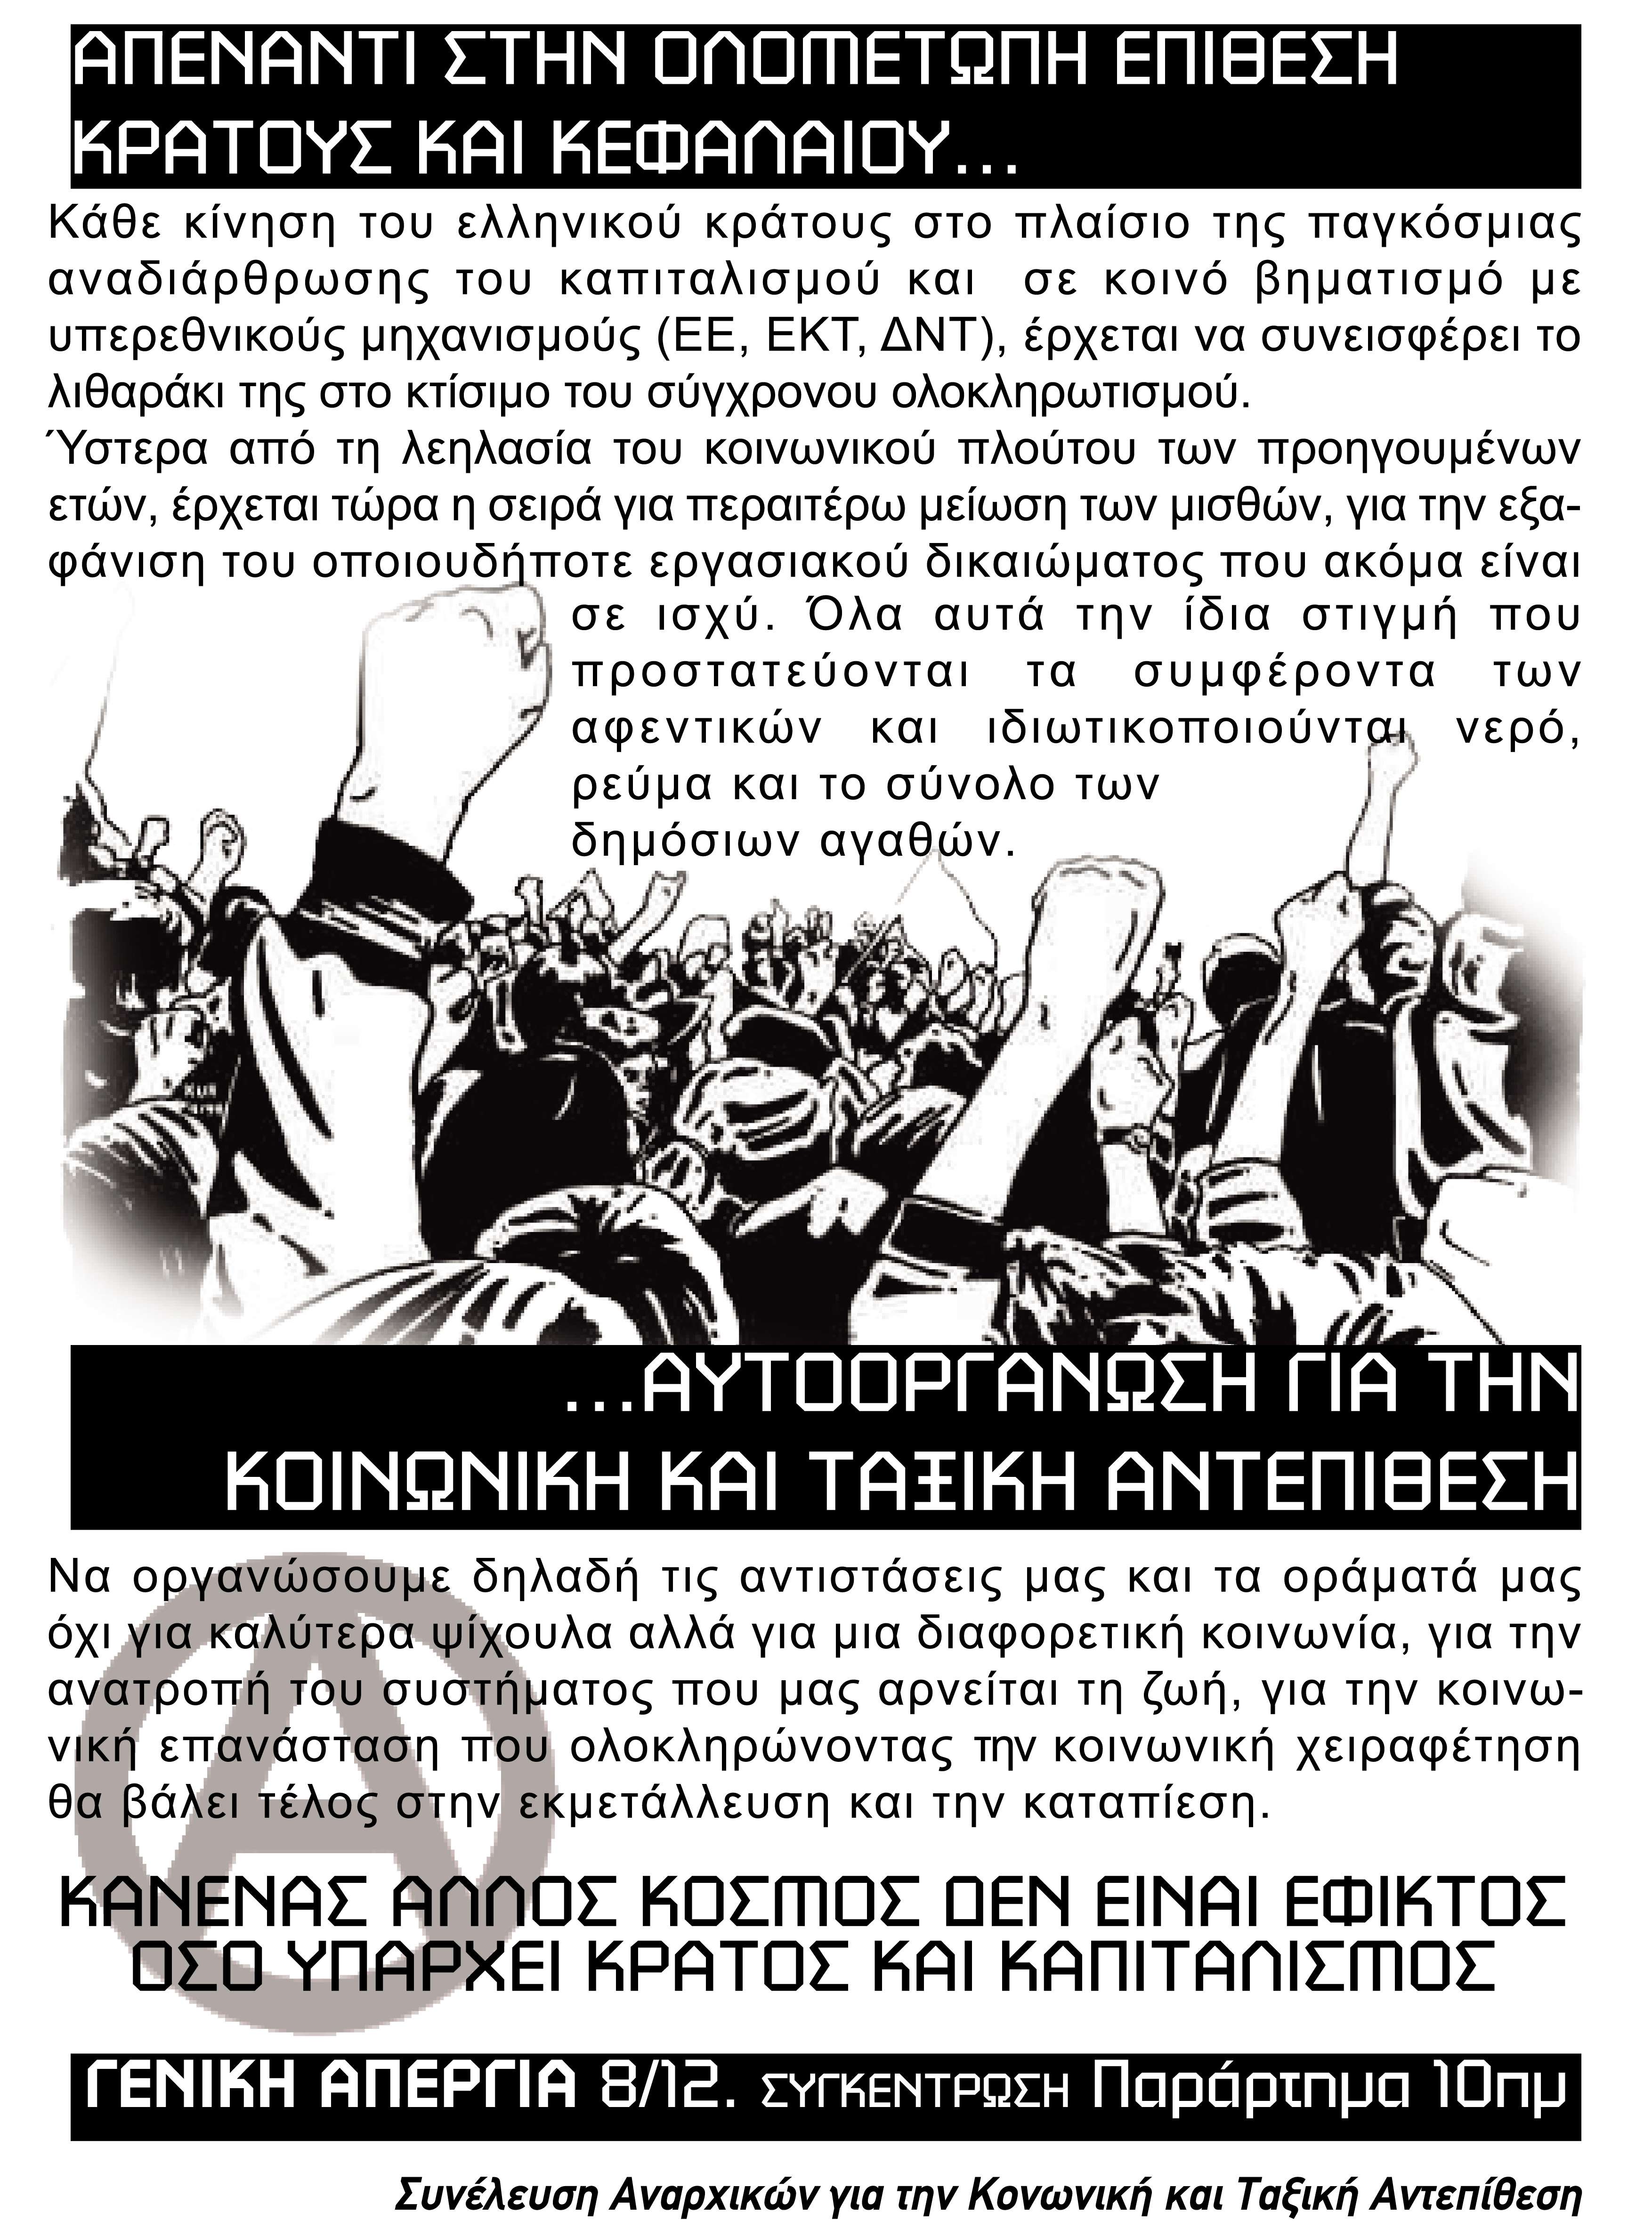 ΣΑΚΤΑ, Πάτρα: Απεργιακή συγκέντρωση και πορεία [Πέμπτη 08/12, 10:00]